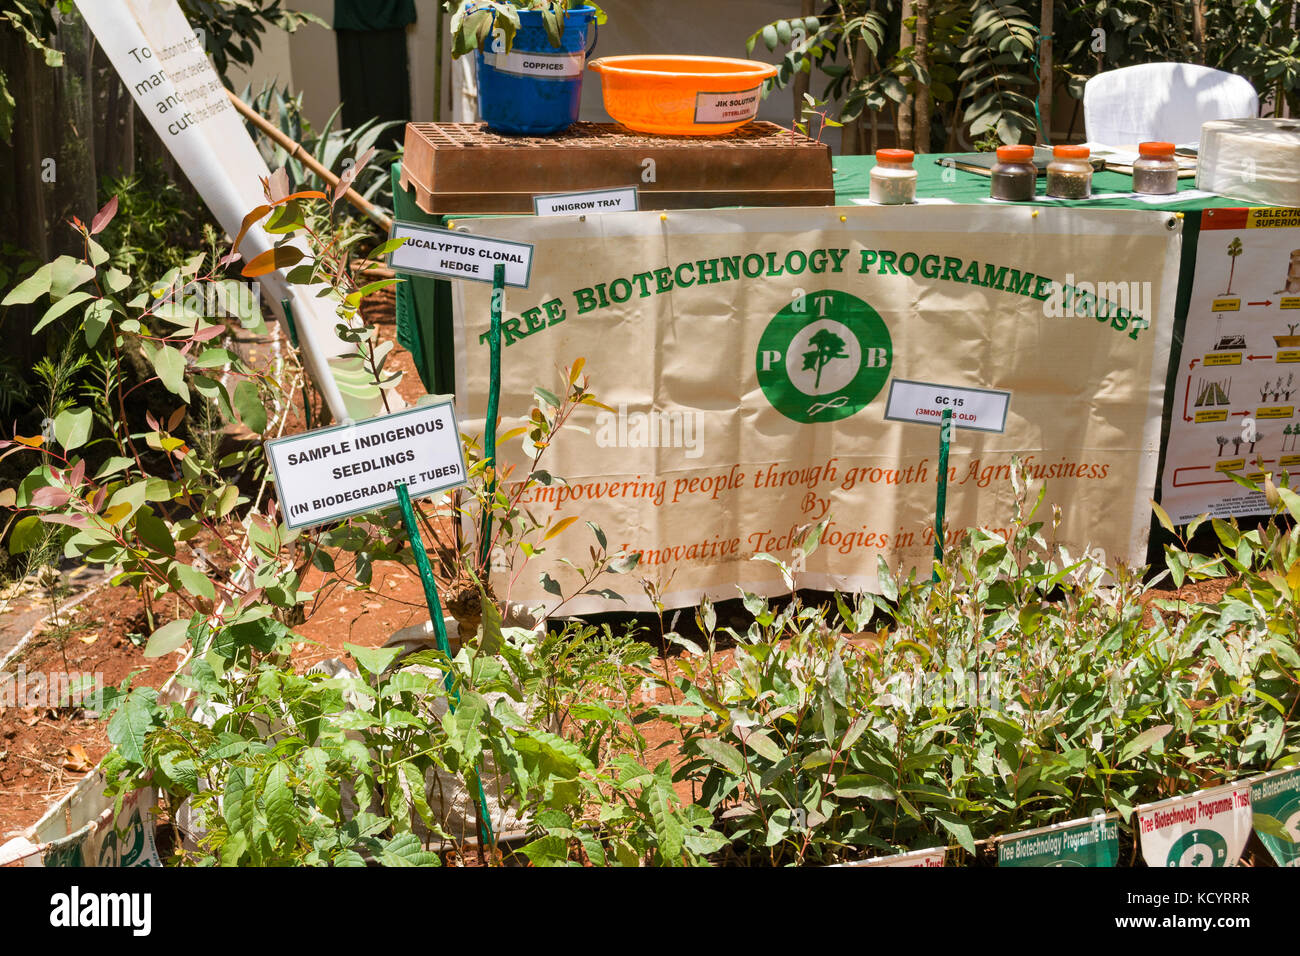 Biotechnologie des arbres Programme Trust afficher, Nairobi Foire commerciale internationale, Kenya Banque D'Images